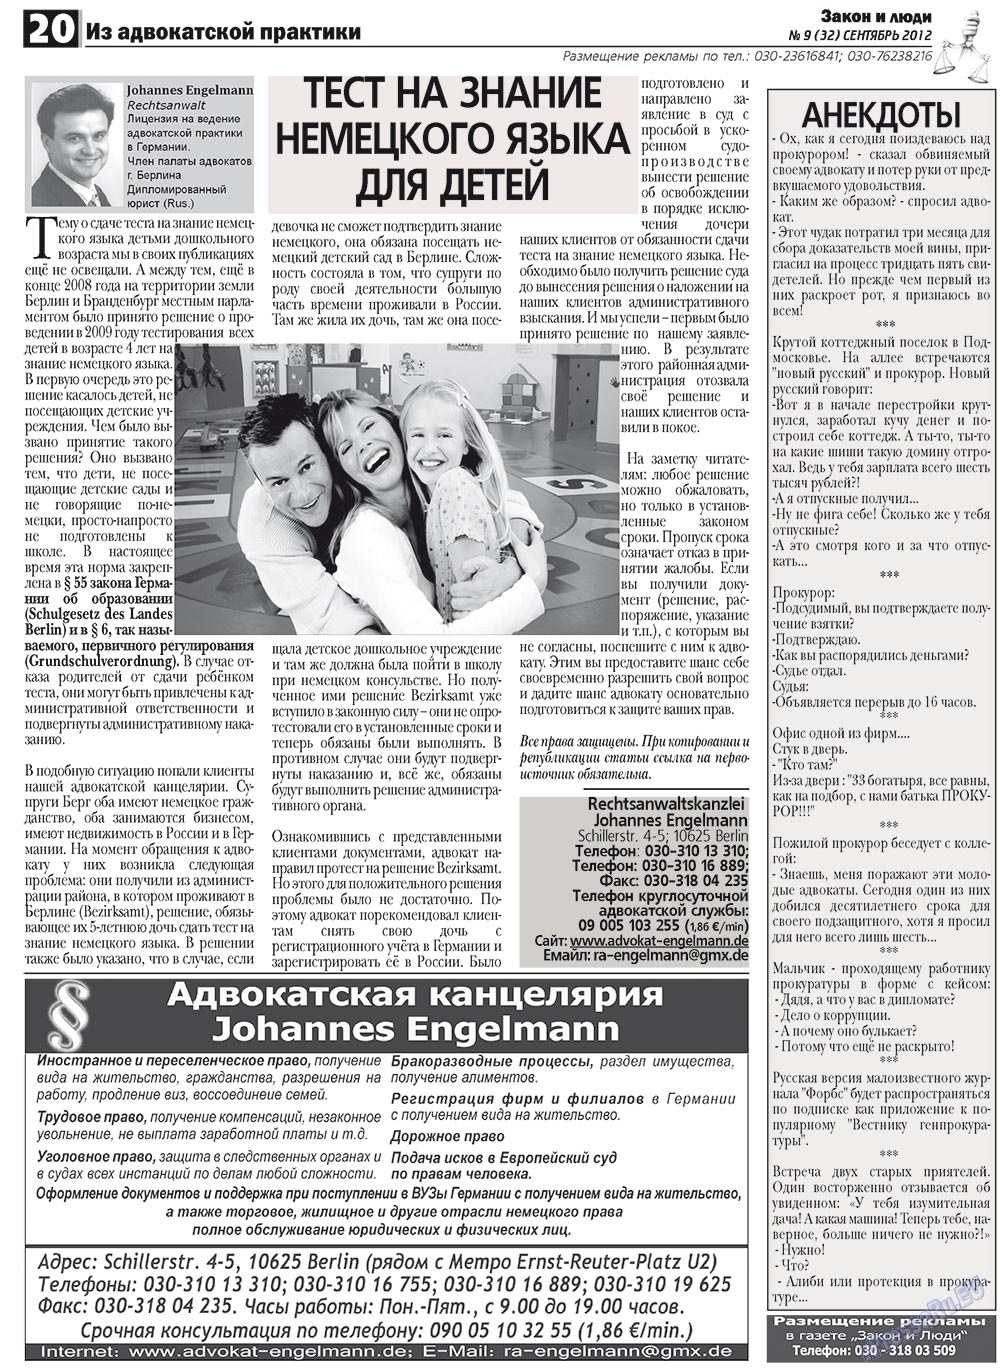 Закон и люди, газета. 2012 №9 стр.20